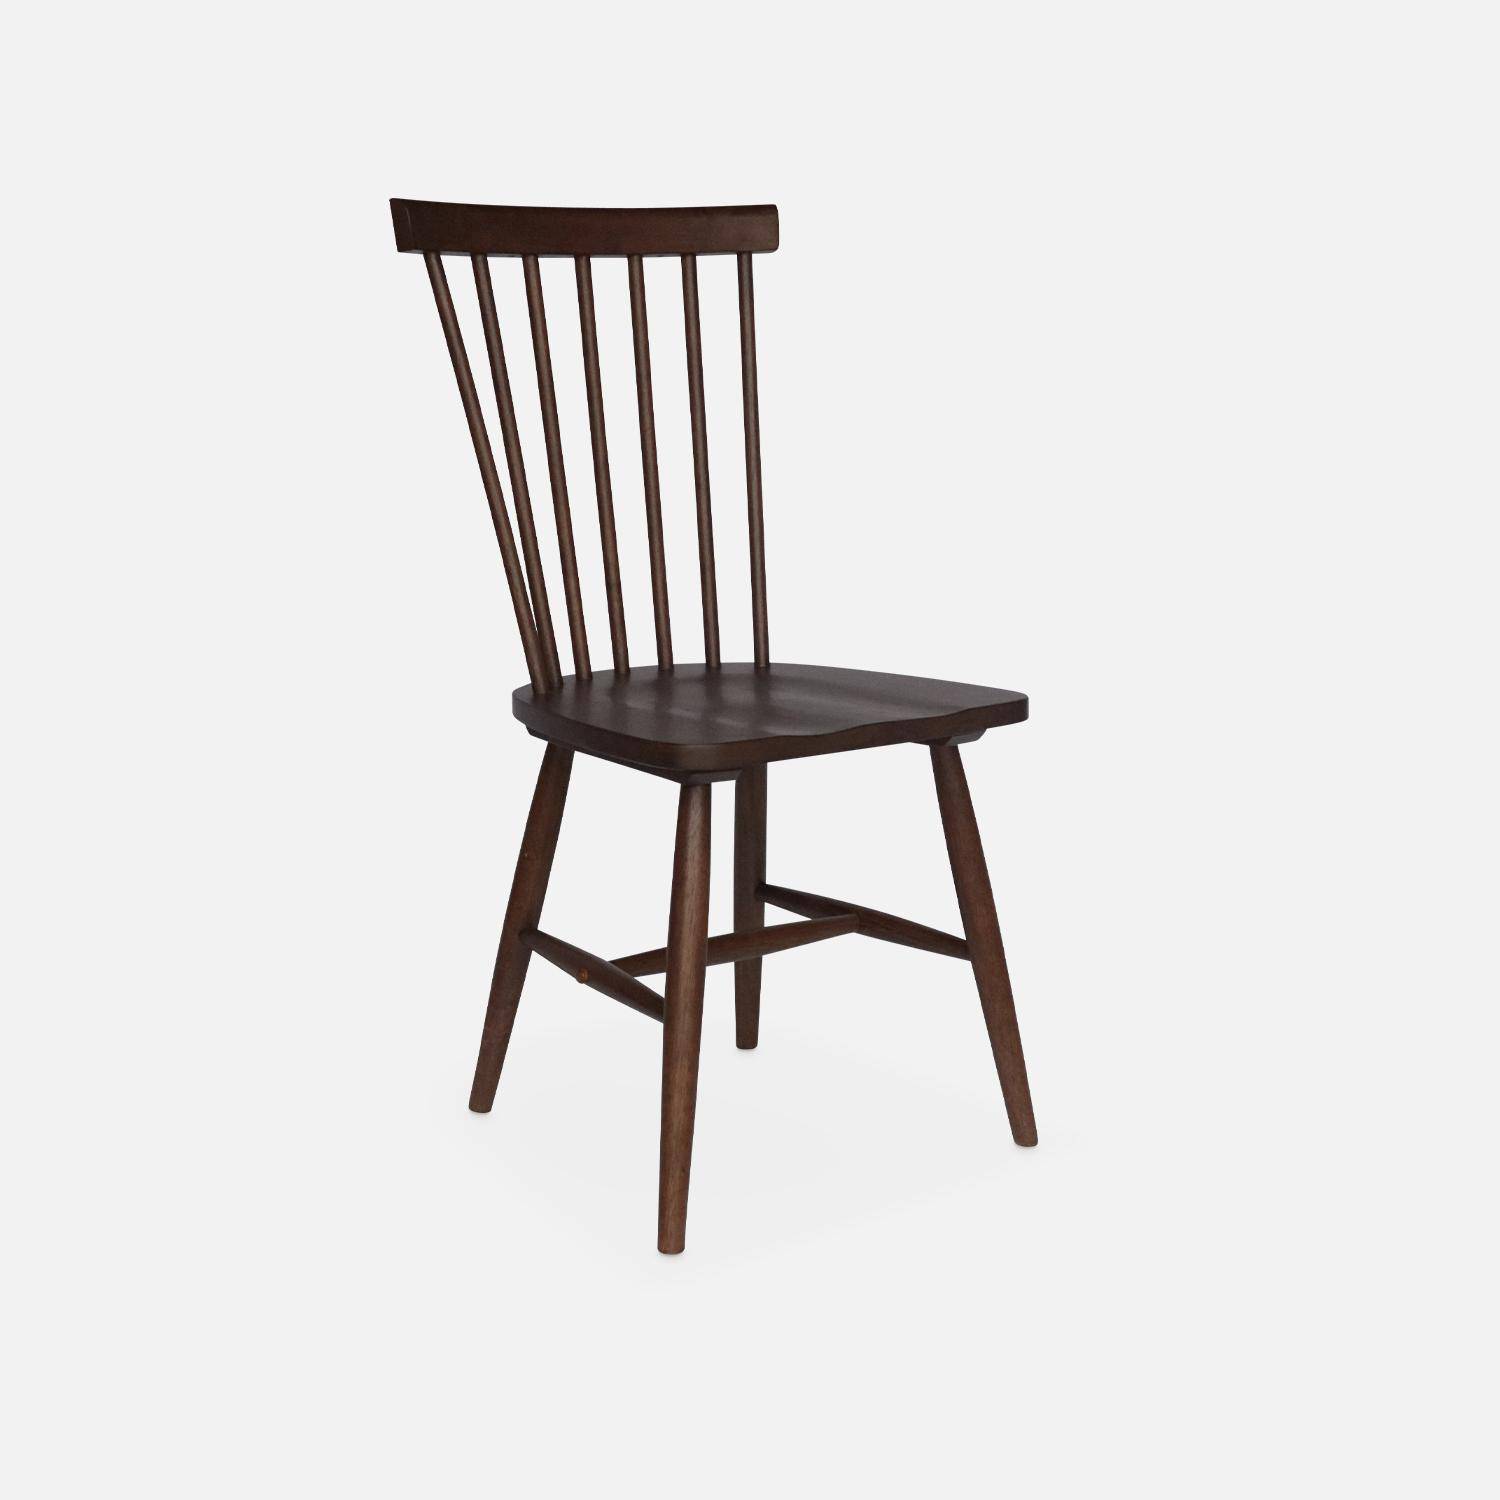 Conjunto de 2 cadeiras de nogueira com ripas de madeira de borracha, ROMIE, L 50,8 x P 44,2 x A 90cm.,sweeek,Photo6